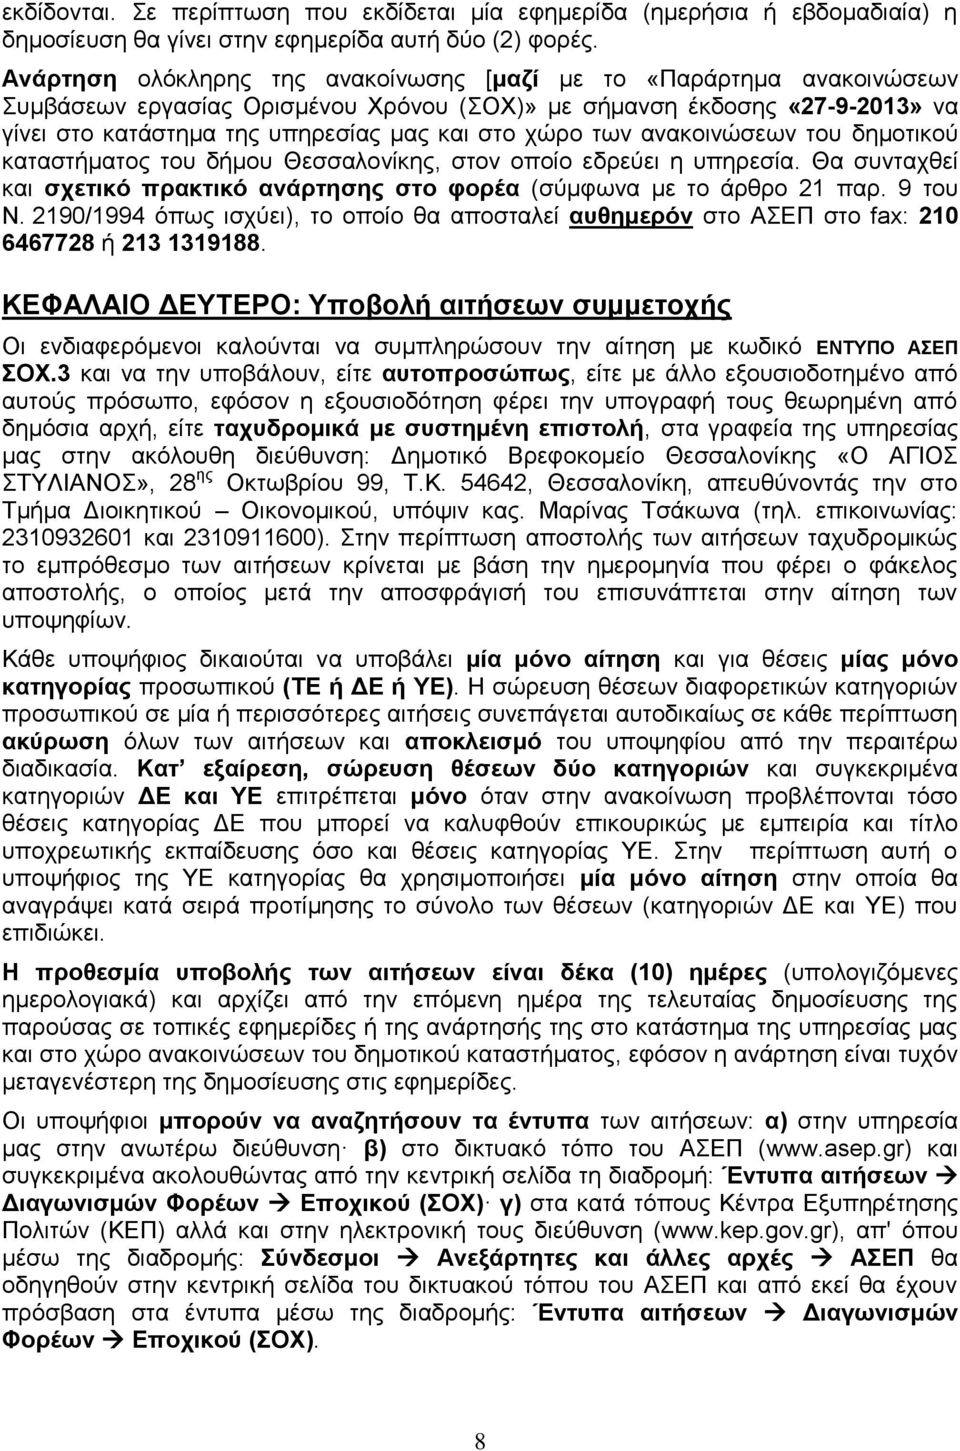 των ανακοινώσεων του δημοτικού καταστήματος του δήμου Θεσσαλονίκης, στον οποίο εδρεύει η υπηρεσία. Θα συνταχθεί και σχετικό πρακτικό ανάρτησης στο φορέα (σύμφωνα με το άρθρο 21 παρ. 9 του Ν.